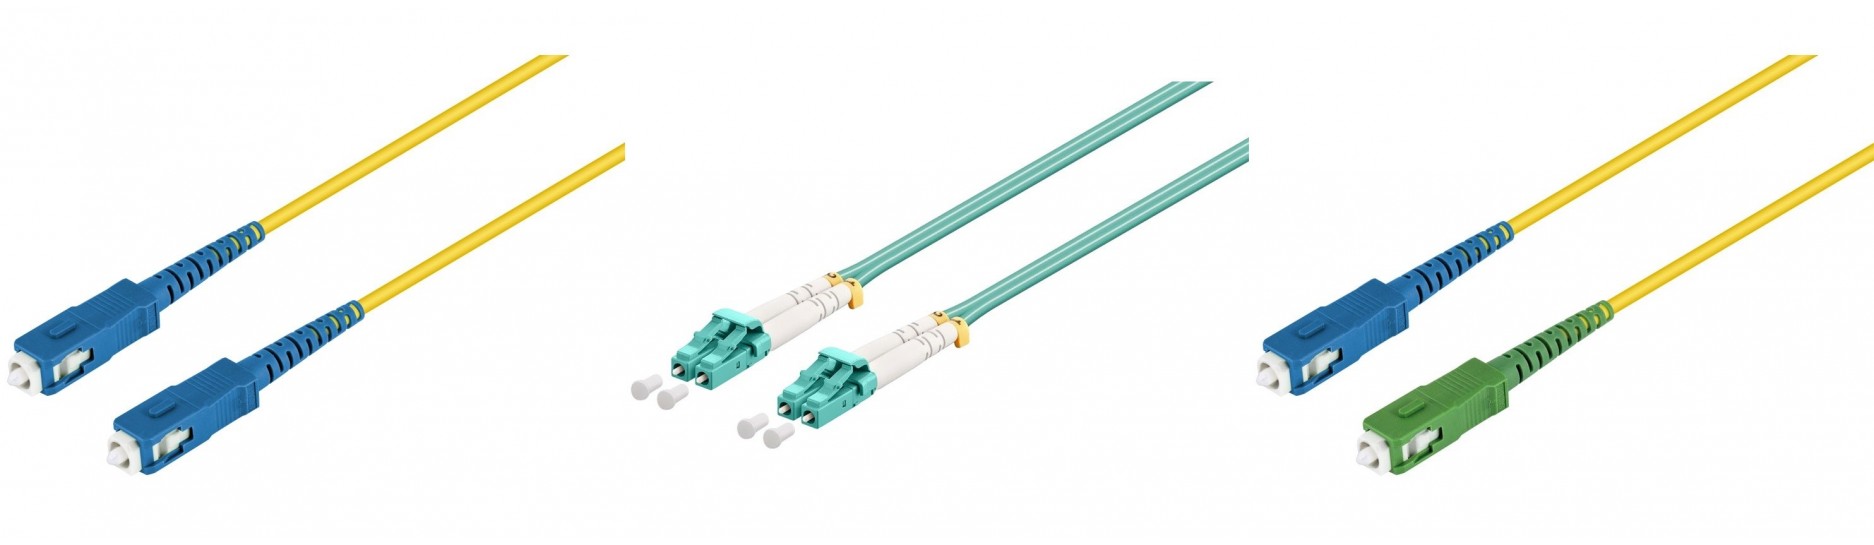 Conectores, conexiones y cables para Fibra Óptica | Comprar Mantenimiento Fibra Óptica